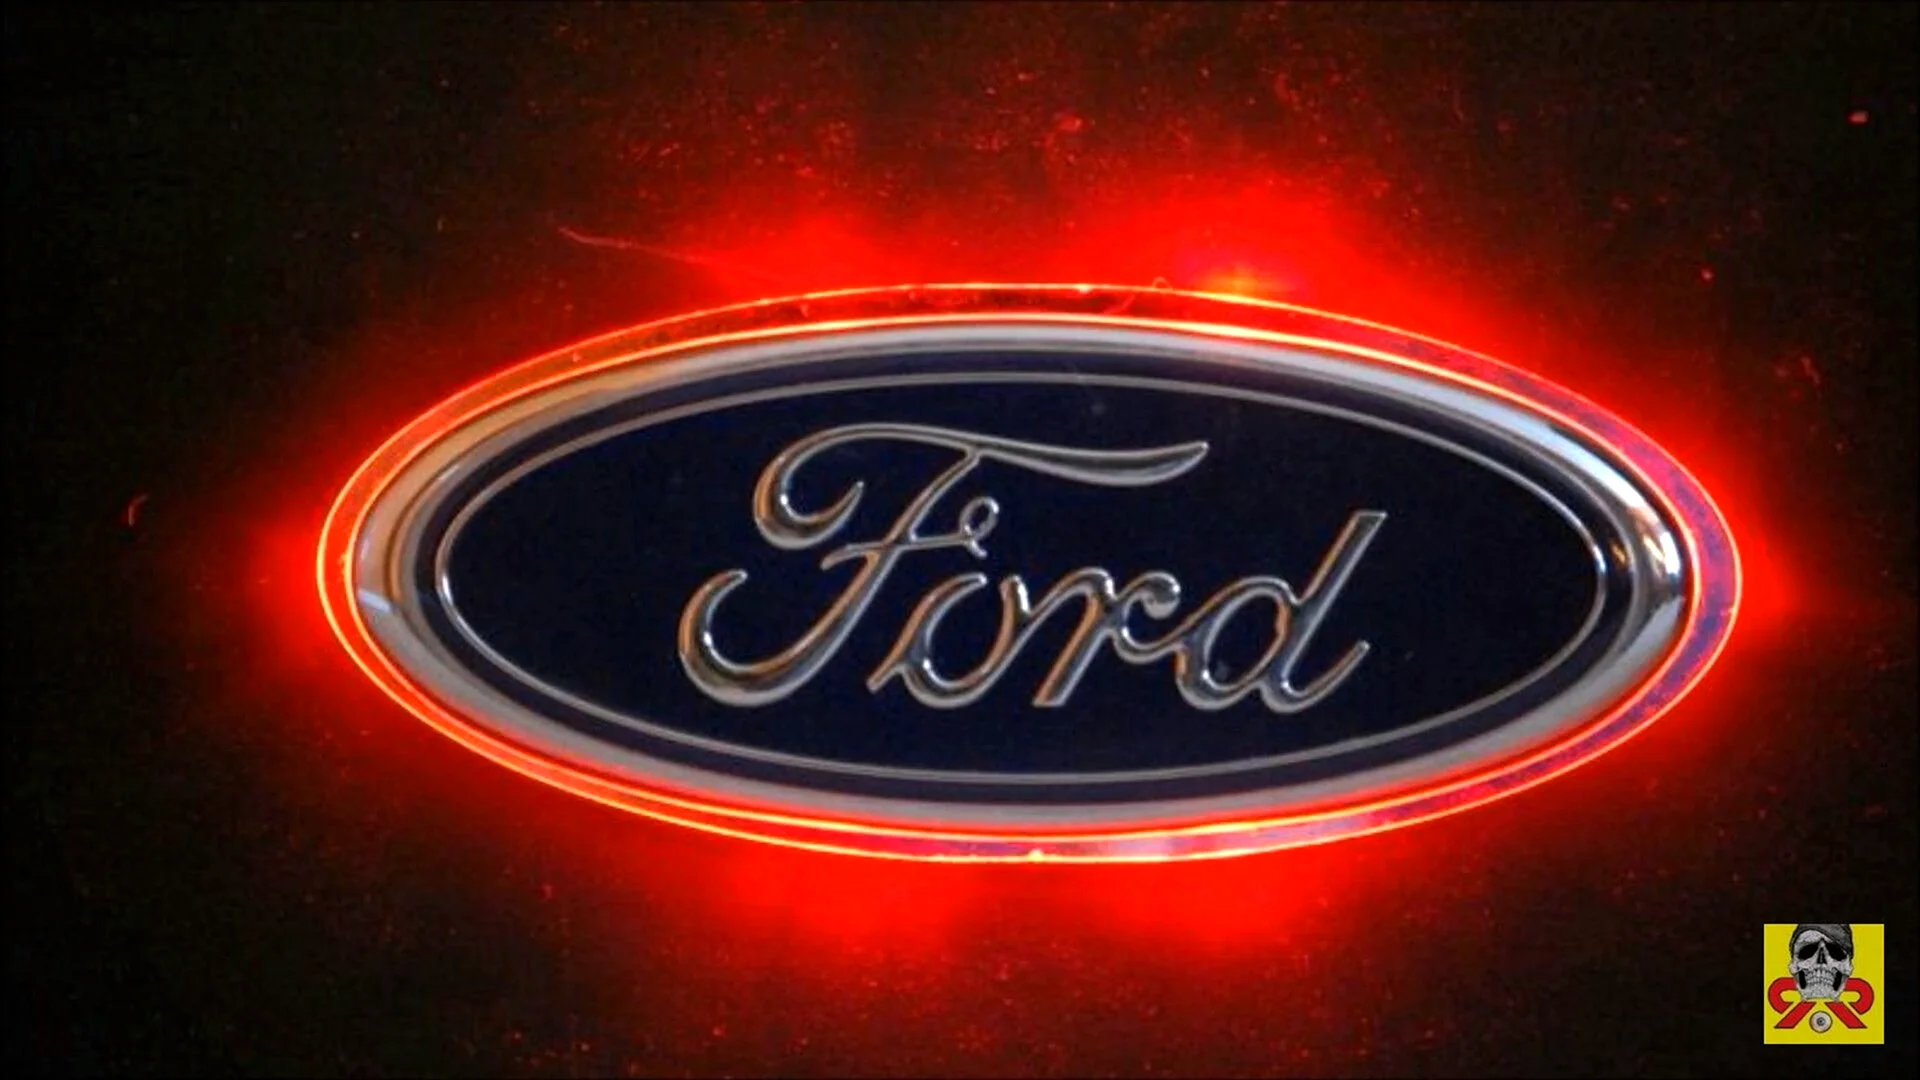 Логотип Форд